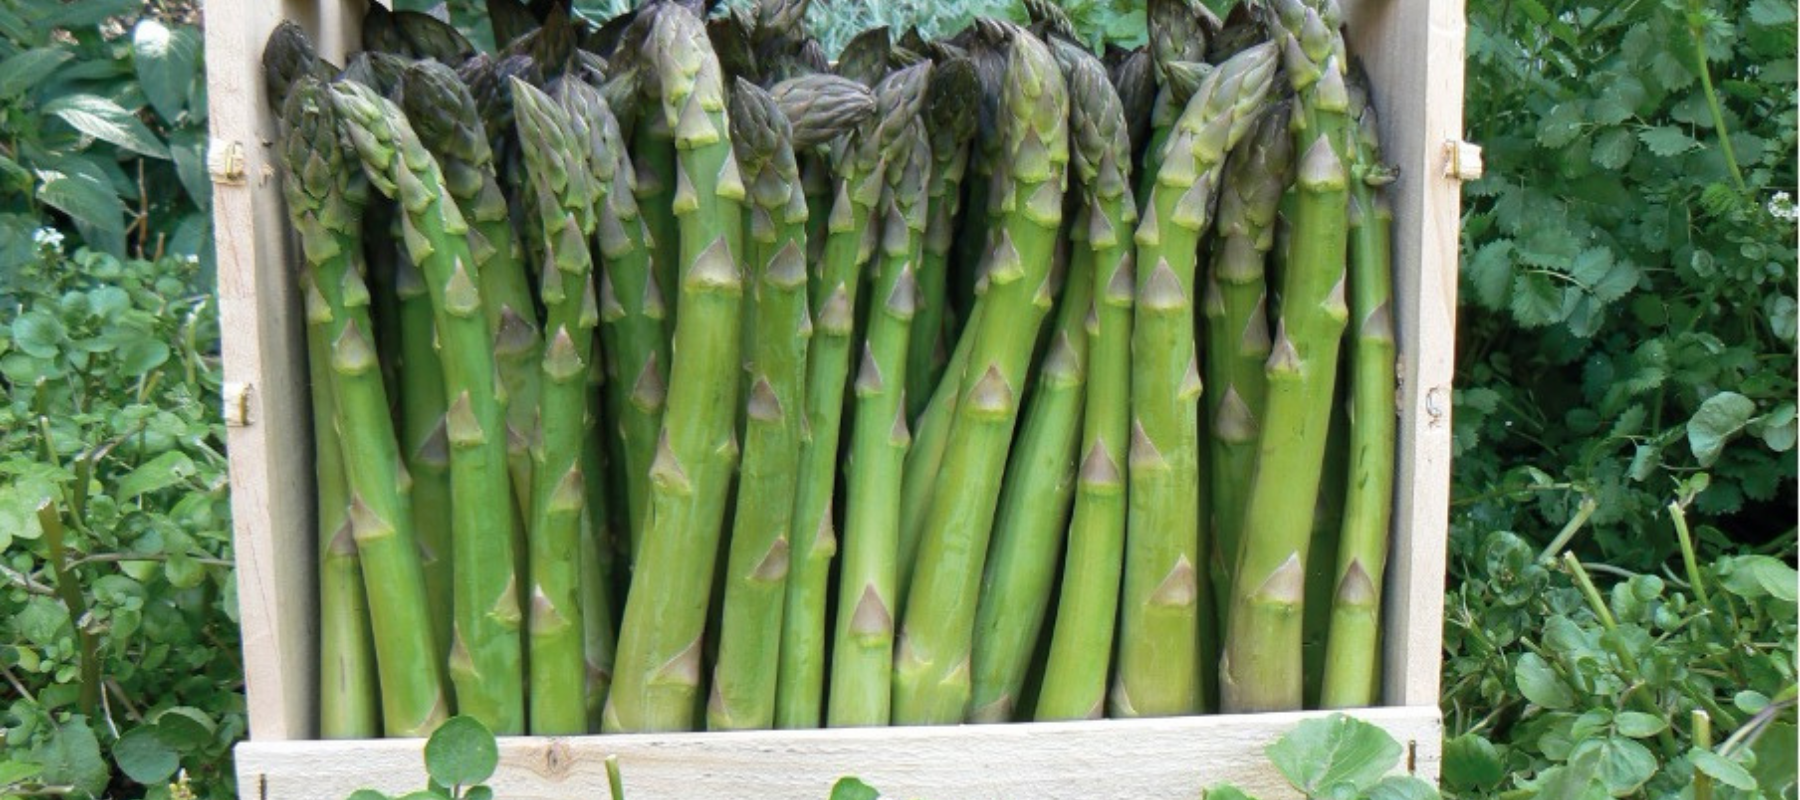 How to Grow Asparagus